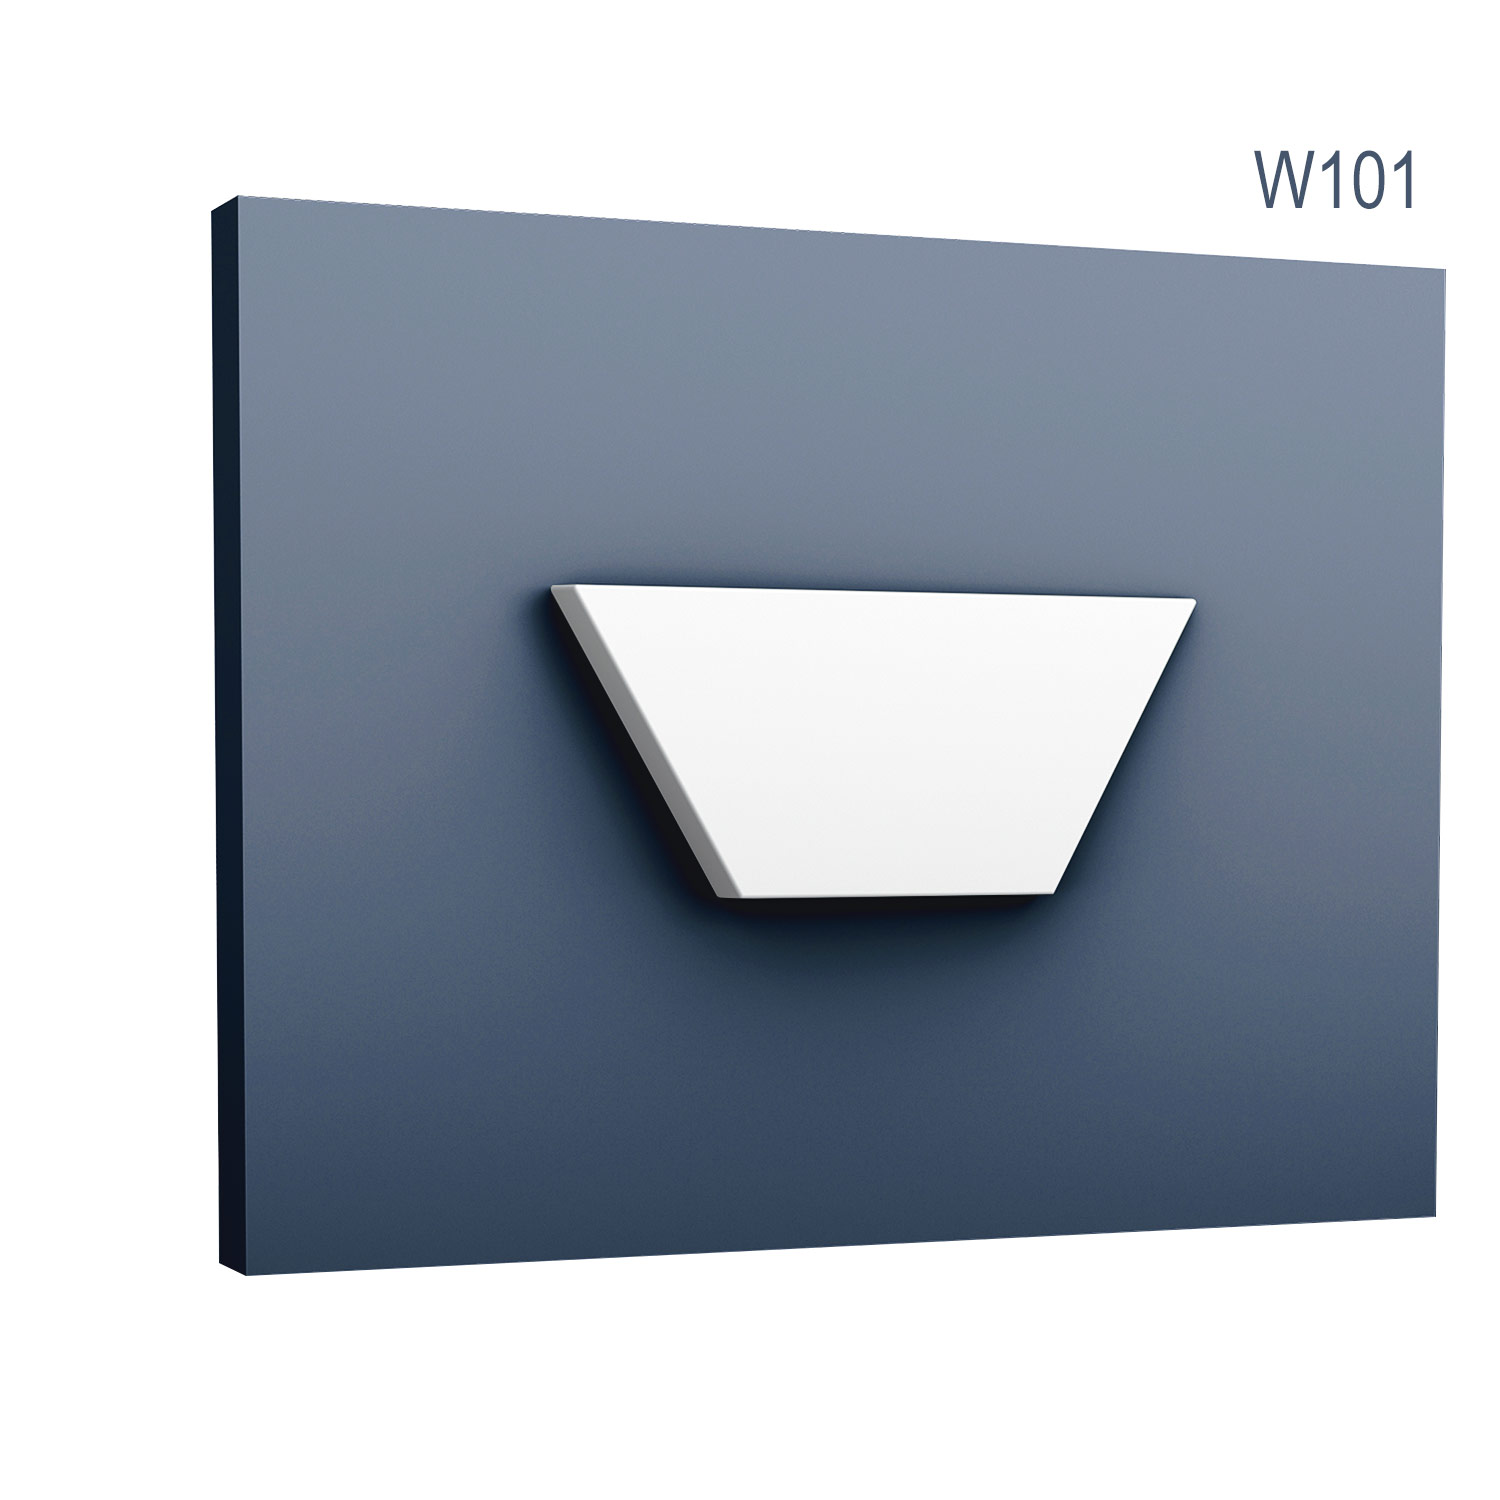 Panel Modern W101, Dimensiuni: 15 X 34.5 X 2.9 cm, Orac Decor